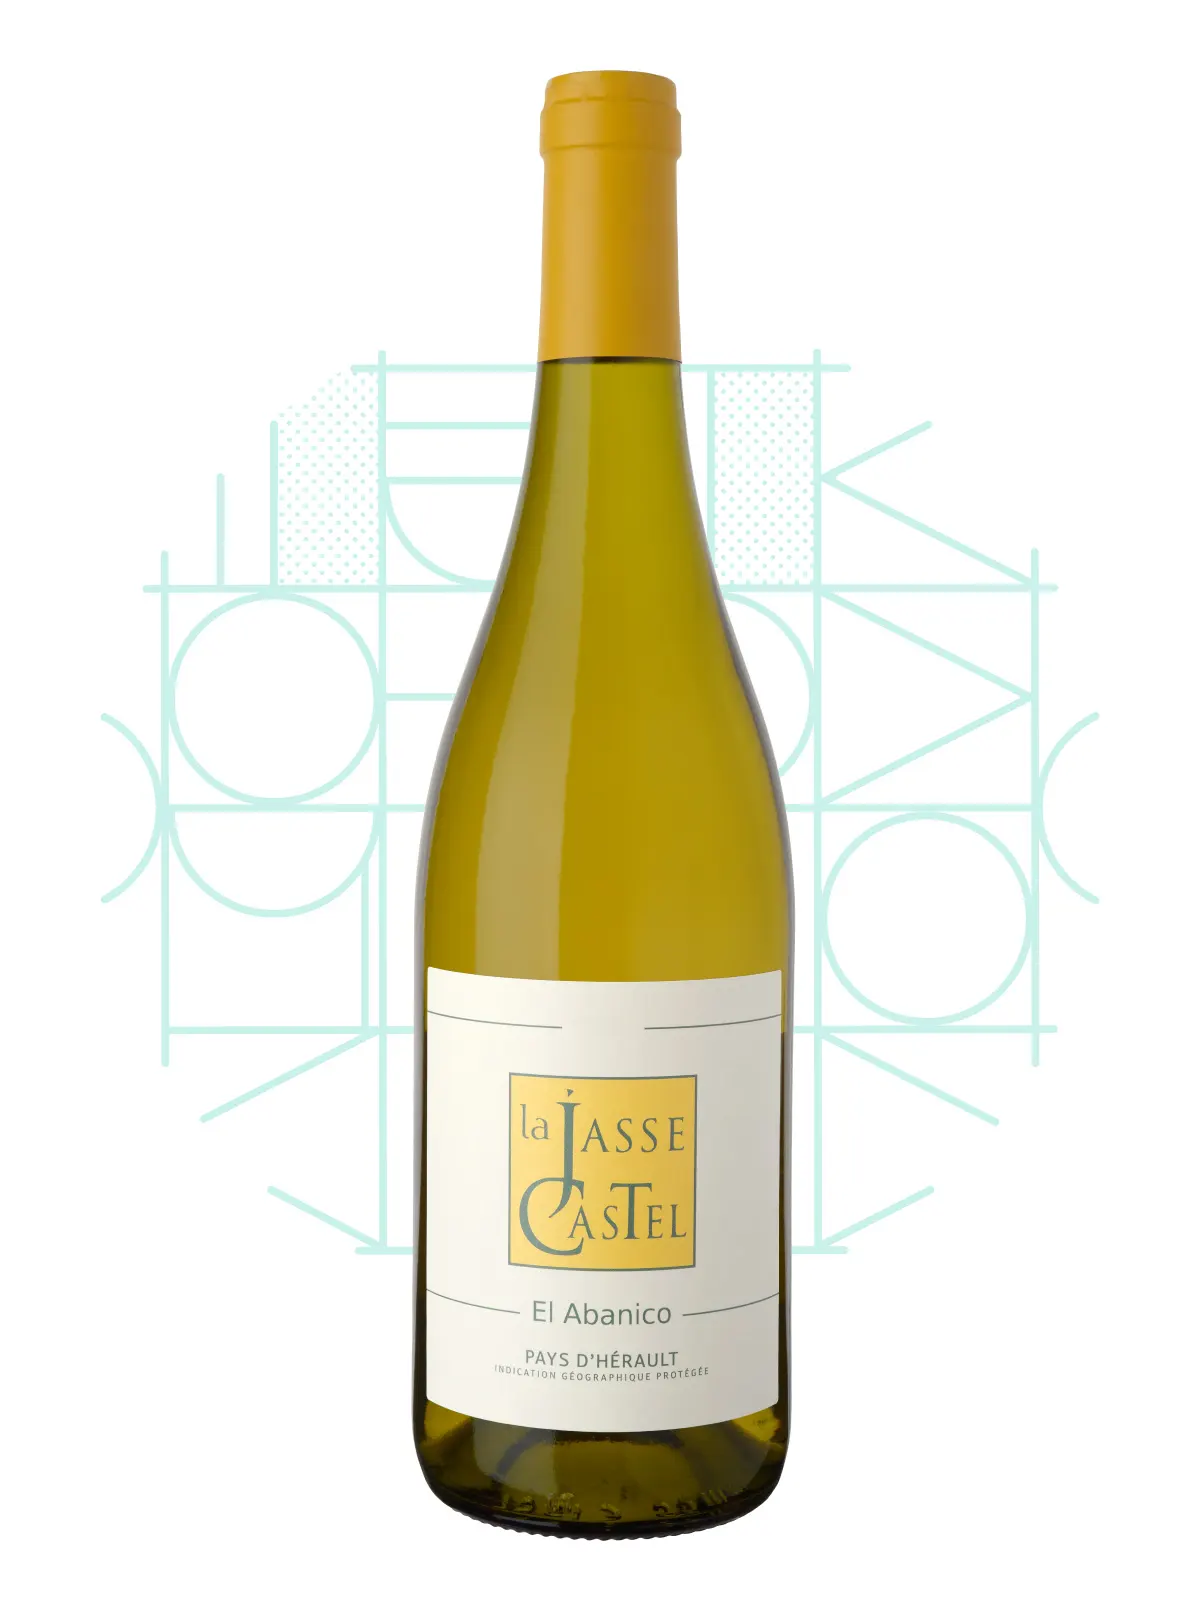 La Jasse Castel - Vin blanc bio - Cuvée El Abanico